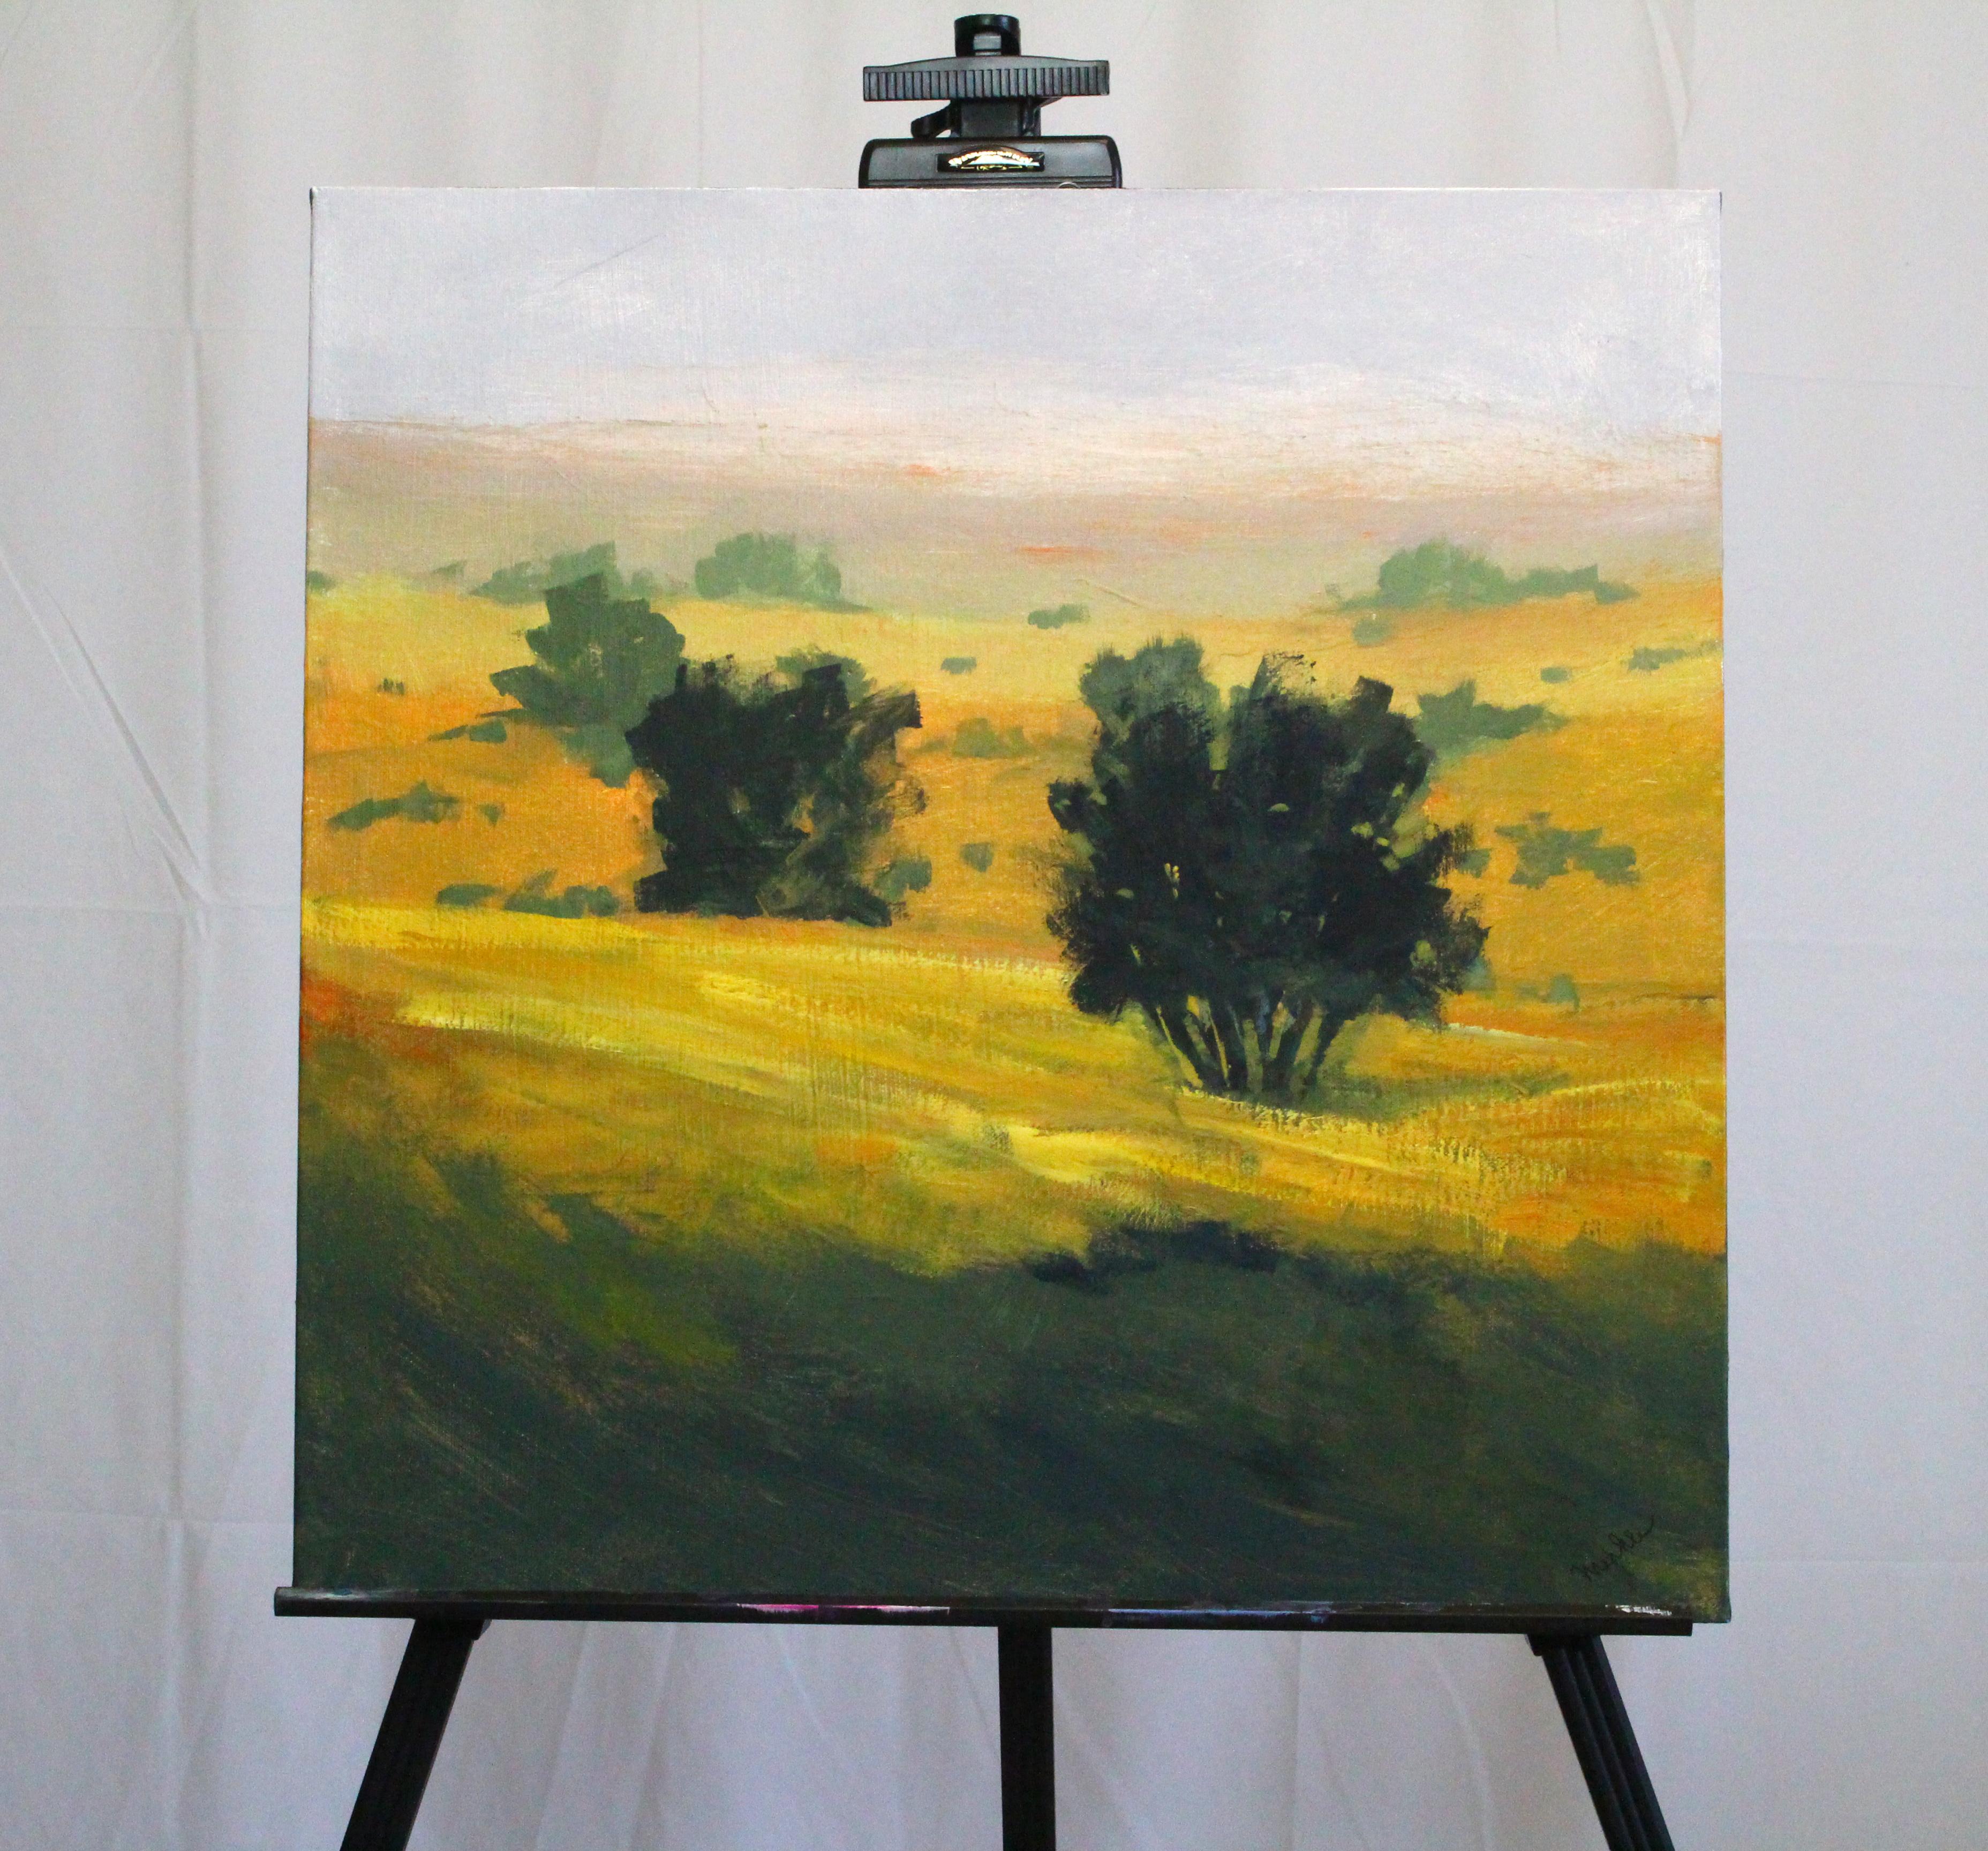 <p>Commentaires de l'artiste<br />Une aube brumeuse sur une prairie de l'ouest, les herbes jaunes et le contraste du feuillage sombre suggérant une journée ensoleillée à venir. Fait partie de la série de scènes de nature de Nancy. Elle passe